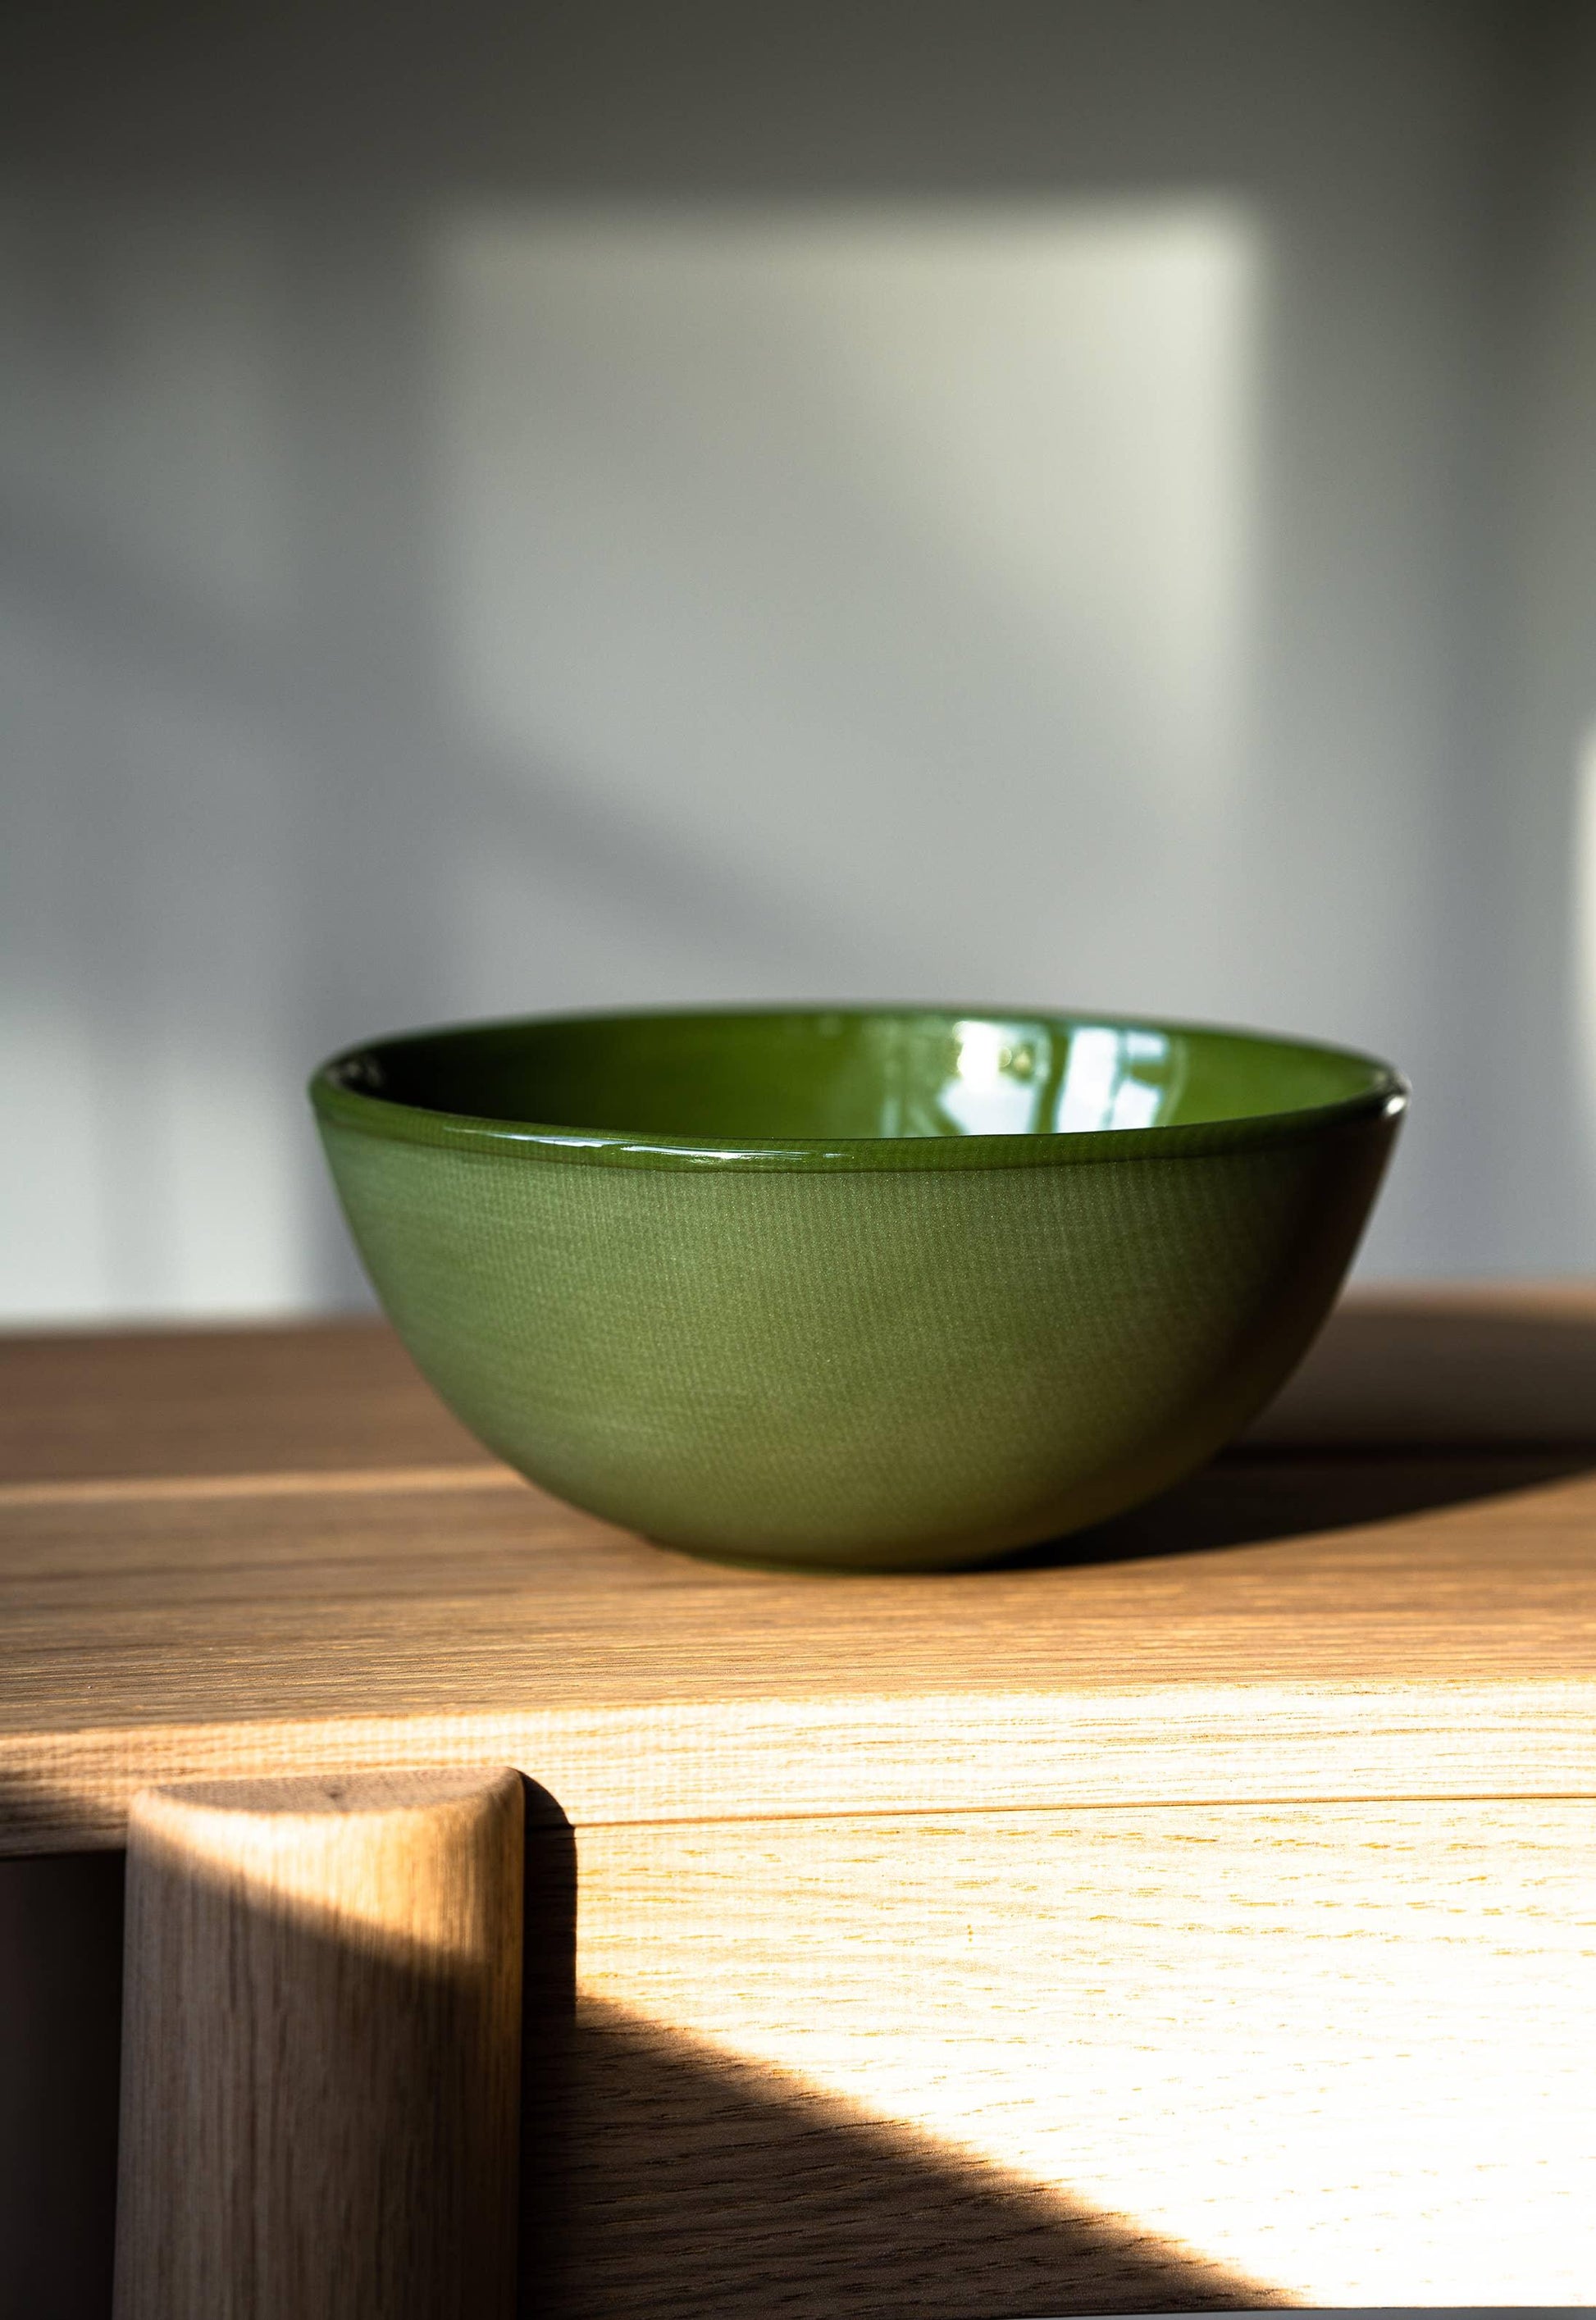 Ethical Trade Co Home Green / Everyday Bowl Handmade Ukrainian Porcelain Bowls